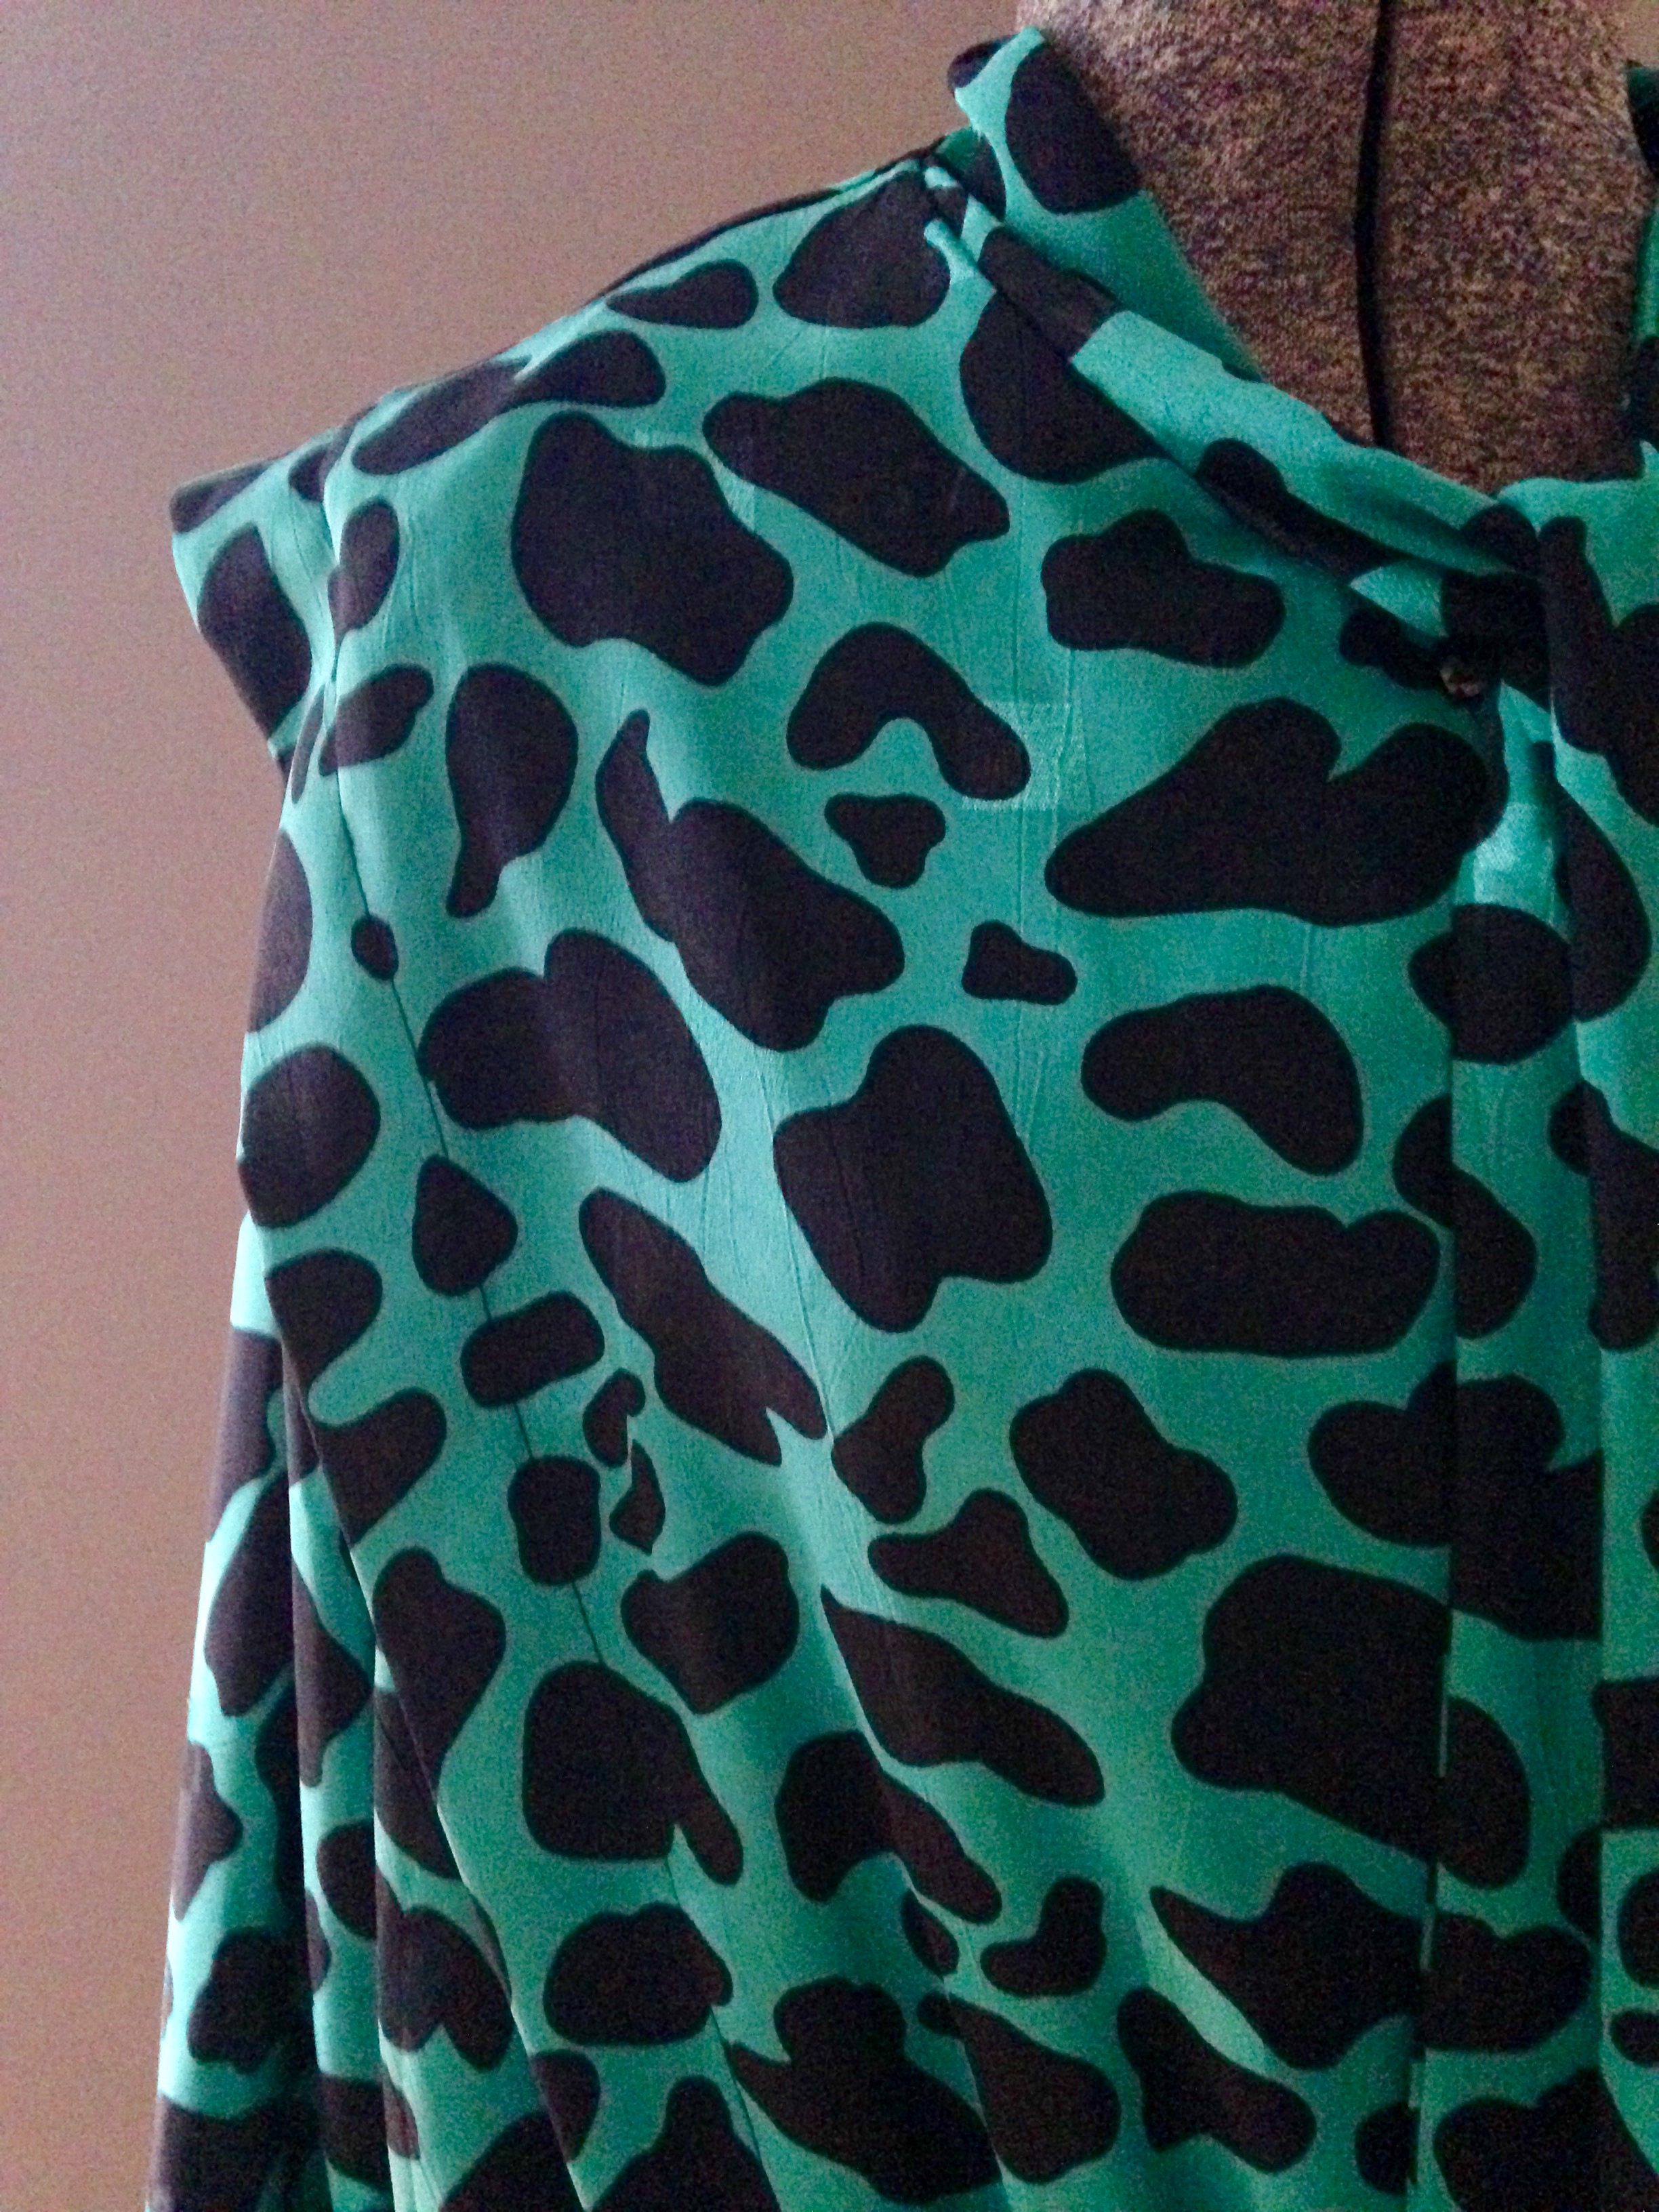 vintage green leopard print dress $41 - dresses - bright lights big pretty